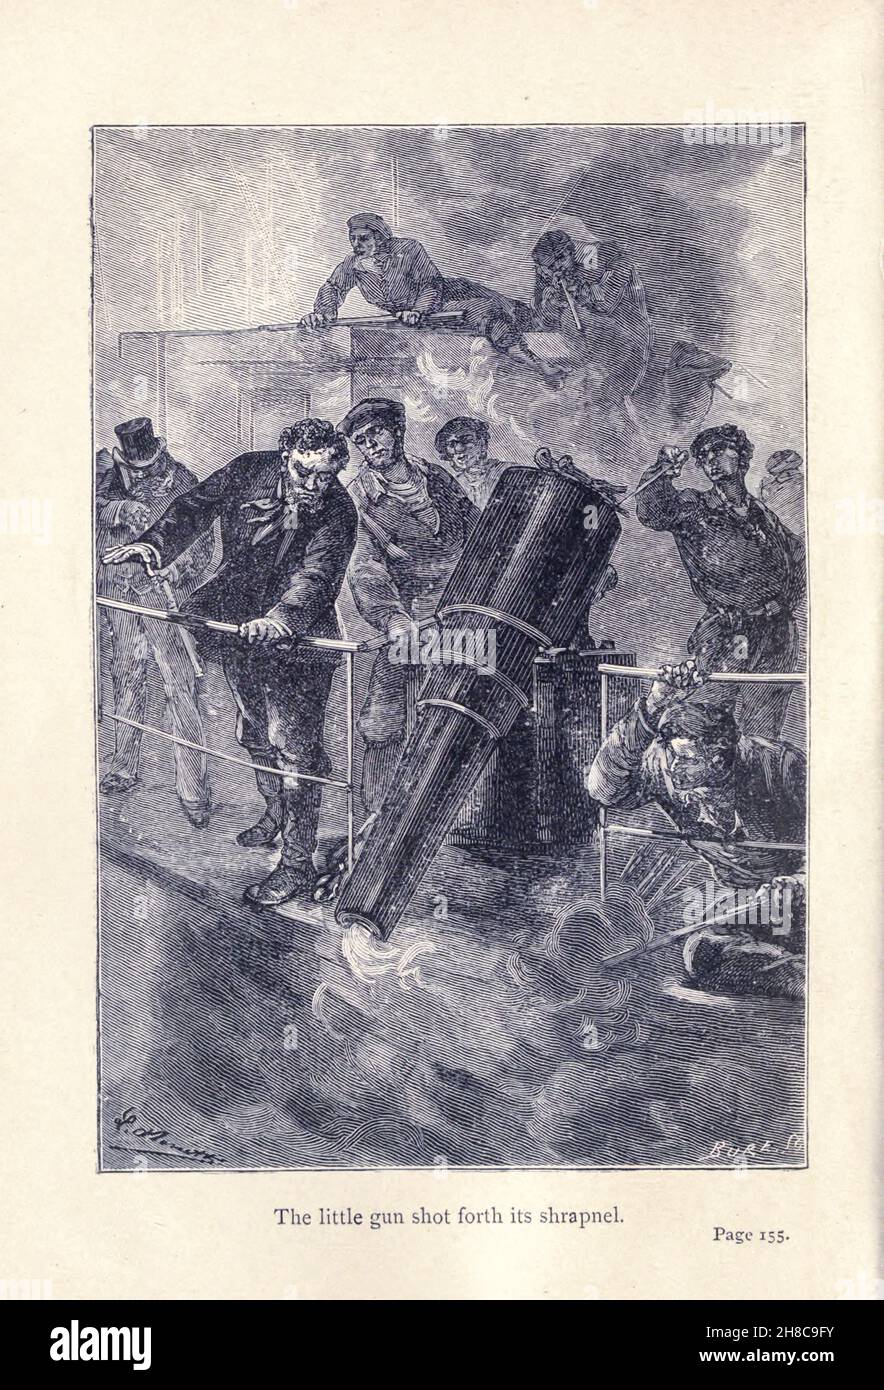 La piccola pistola sparò il suo shrapnel da Robur il Conqueror (in francese: Robur-le-Conquérant) è un romanzo di fantascienza di Jules Verne, pubblicato nel 1886. È anche noto come Clipper delle nuvole. Ha un sequel, Maestro del mondo, che è stato pubblicato nel 1904. Foto Stock